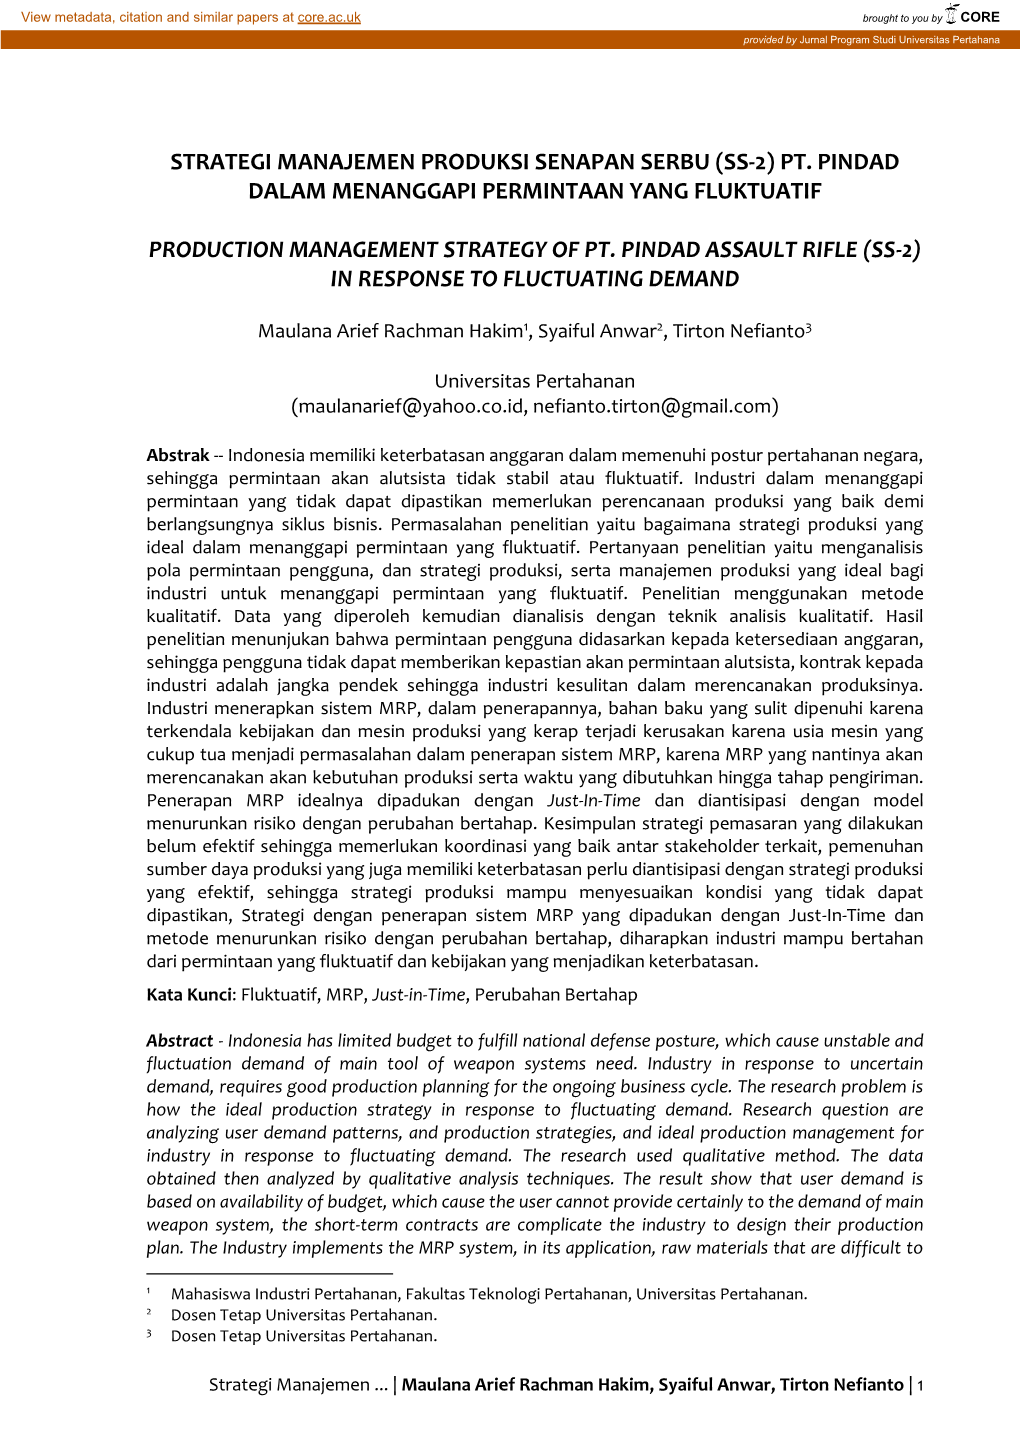 Strategi Manajemen Produksi Senapan Serbu (Ss-2) Pt. Pindad Dalam Menanggapi Permintaan Yang Fluktuatif Production Management S